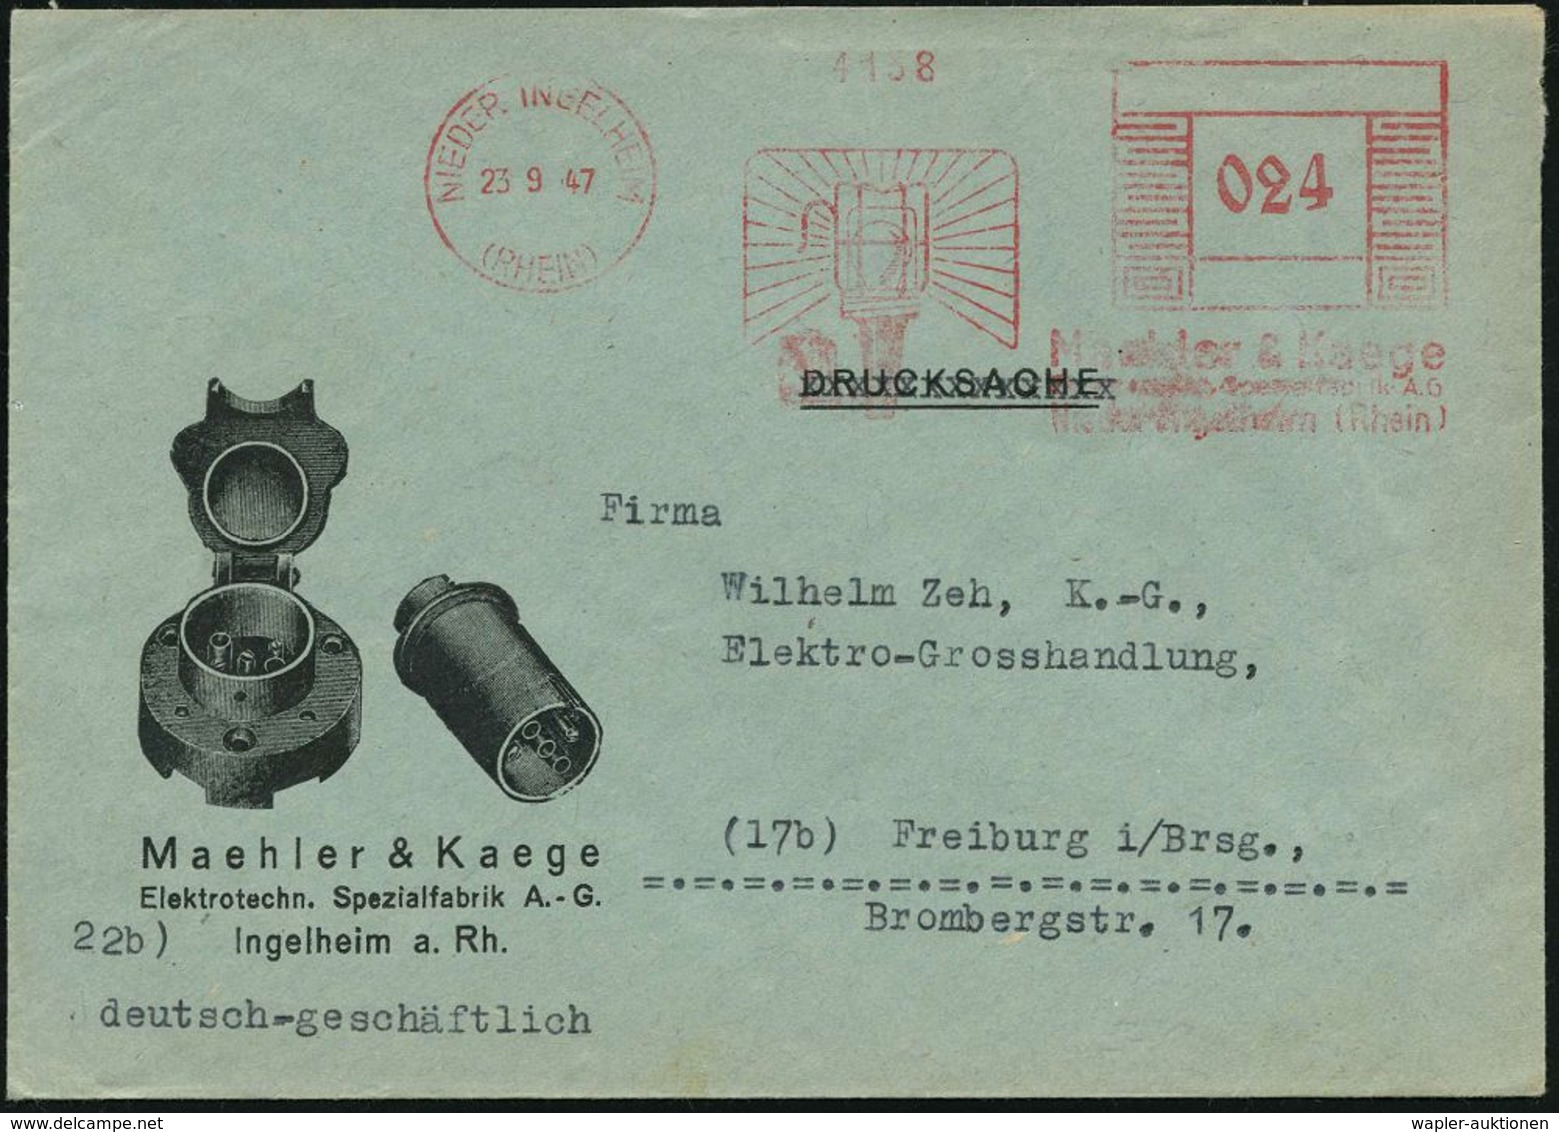 ELEKTRISCHE APPARATE & MASCHINEN : NIEDER INGELHEIM/ (RHEIN)/ Maehler & Kaege.. 1947 (23.9.) Aptierter AFS "Mäanderrecht - Electricity